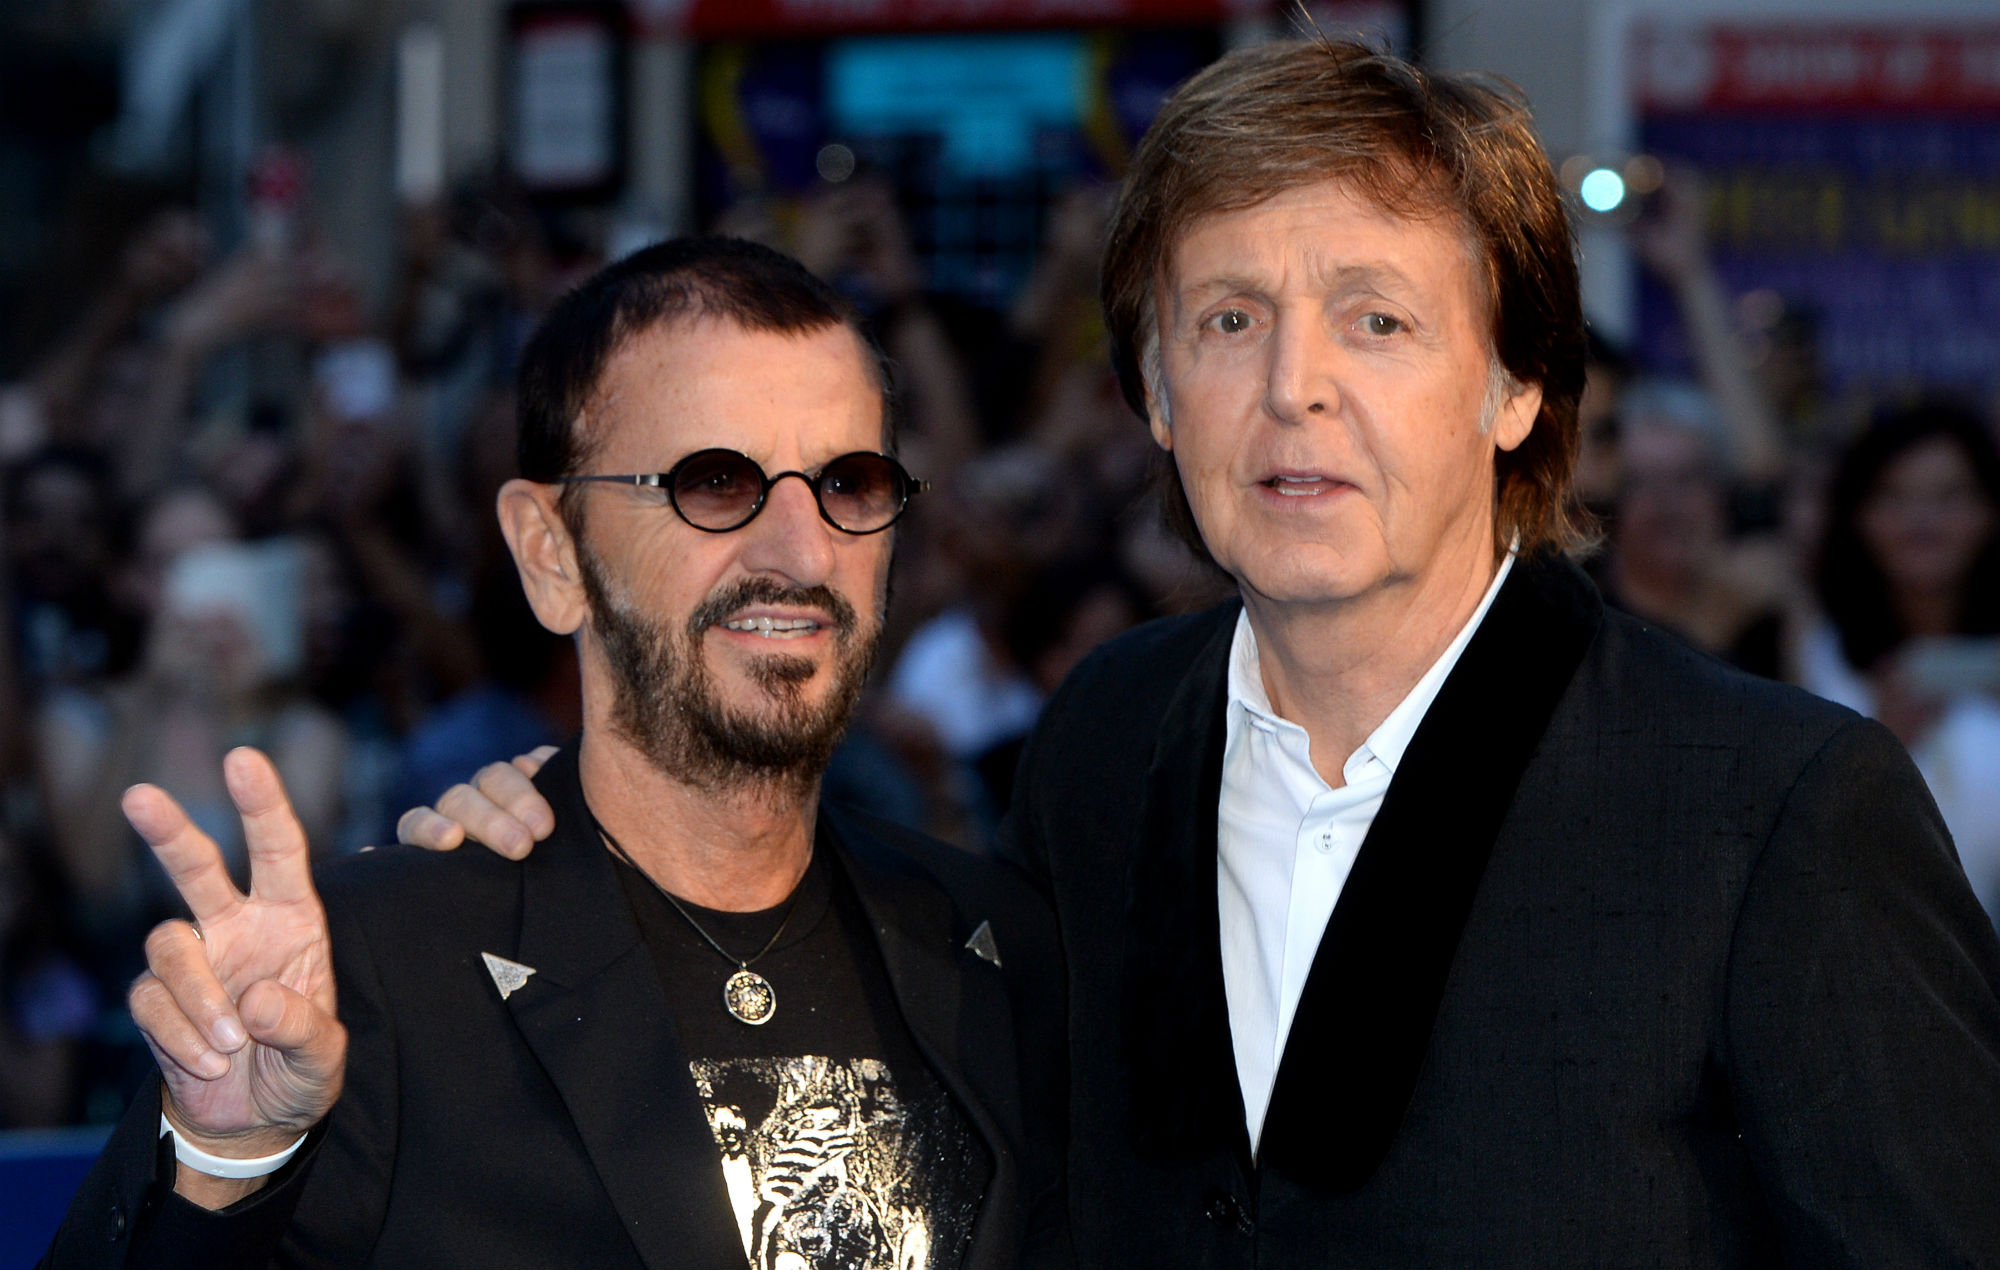 Ringo Starr & Paul McCartney